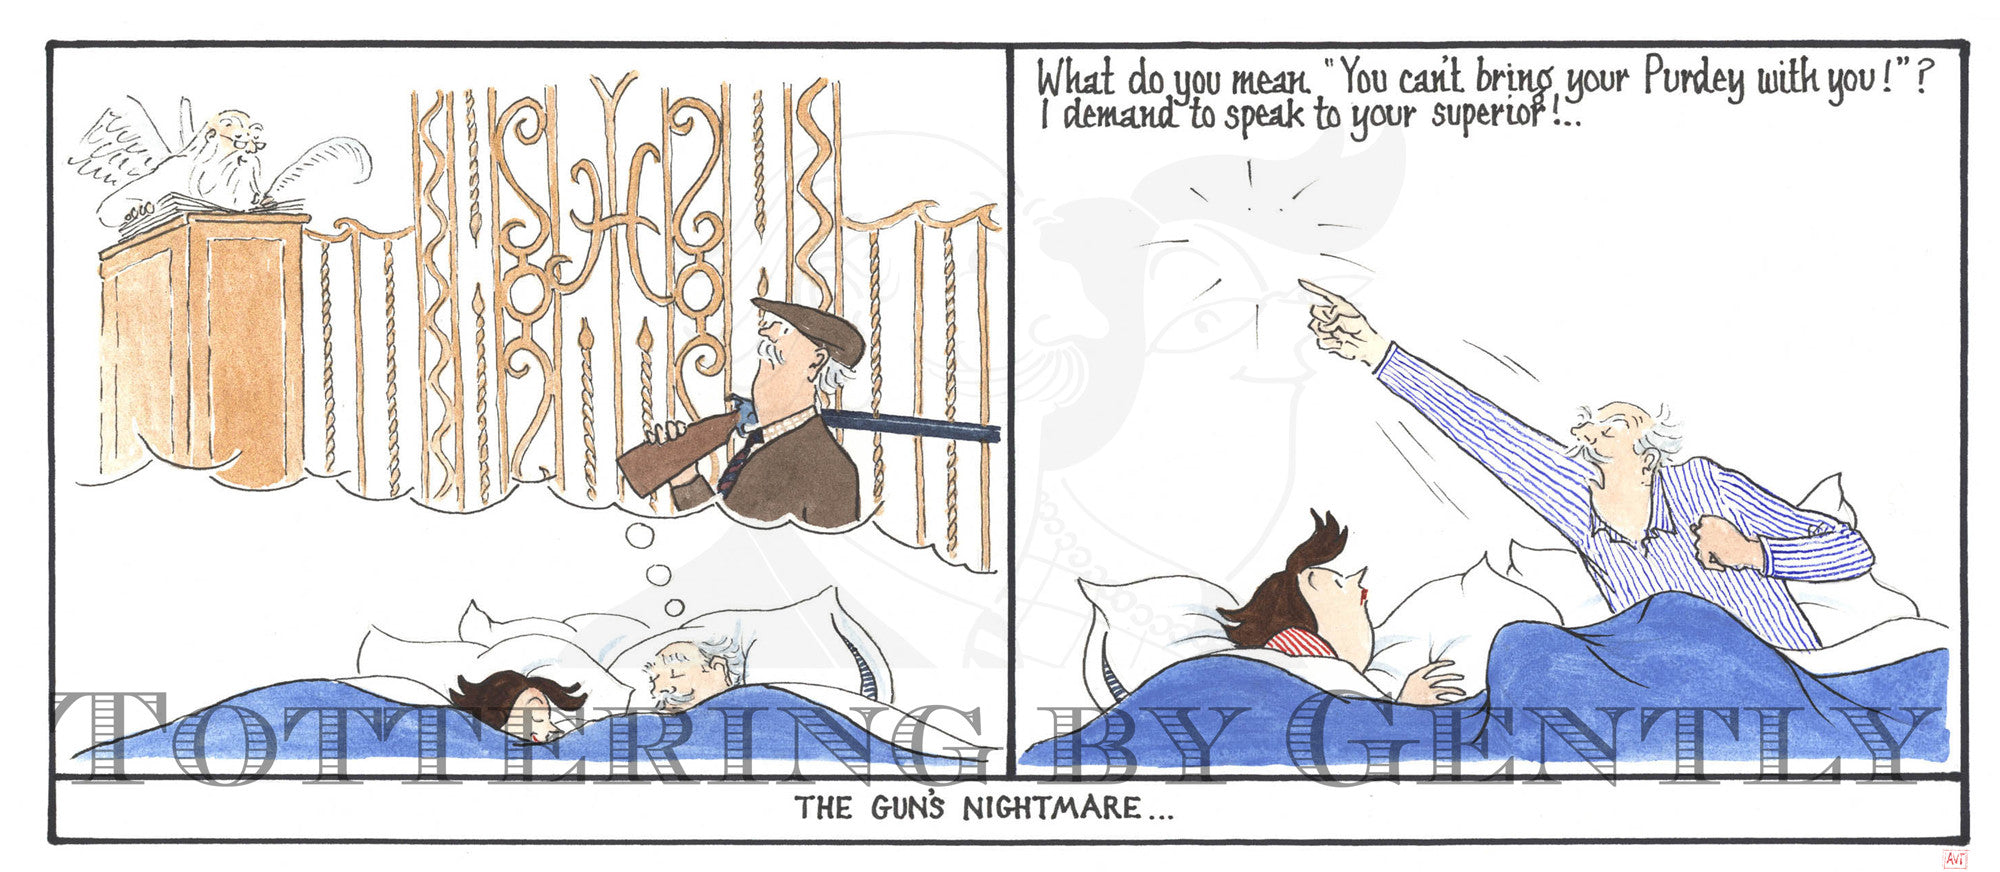 The Gun's nightmare ...  (CL0672)